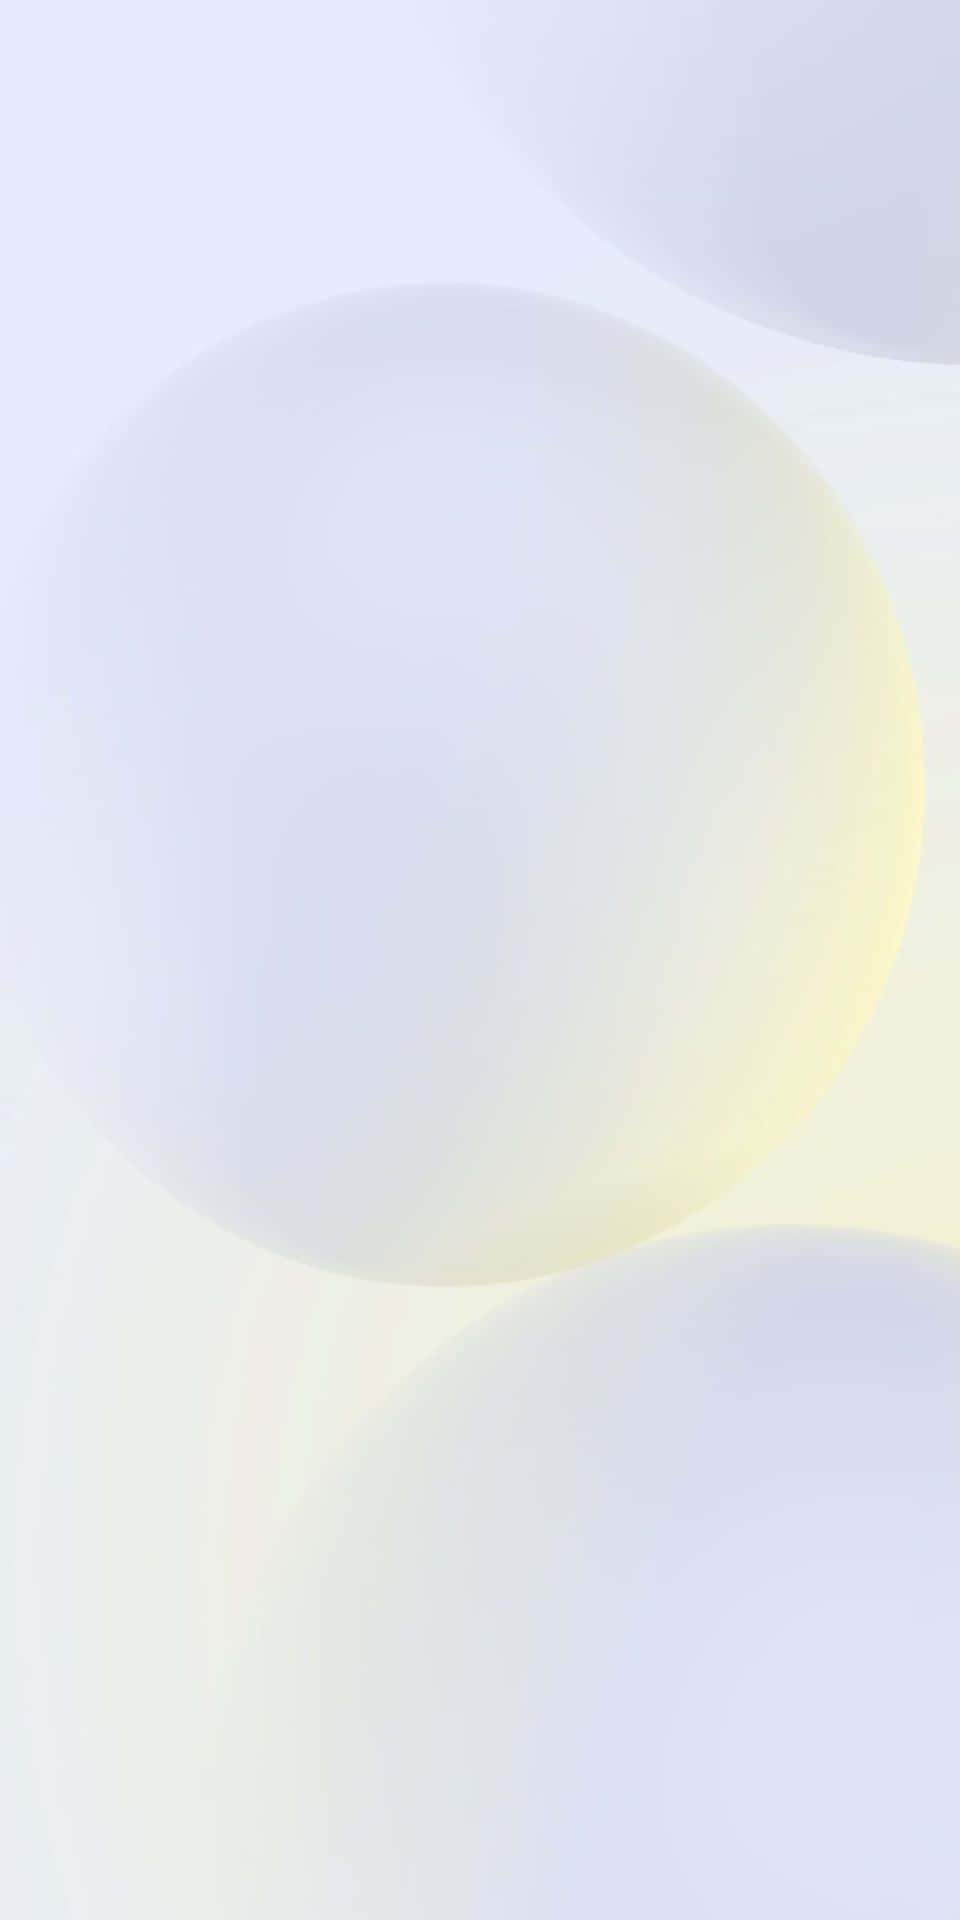 Pastel Pixel 3 Amoled Background